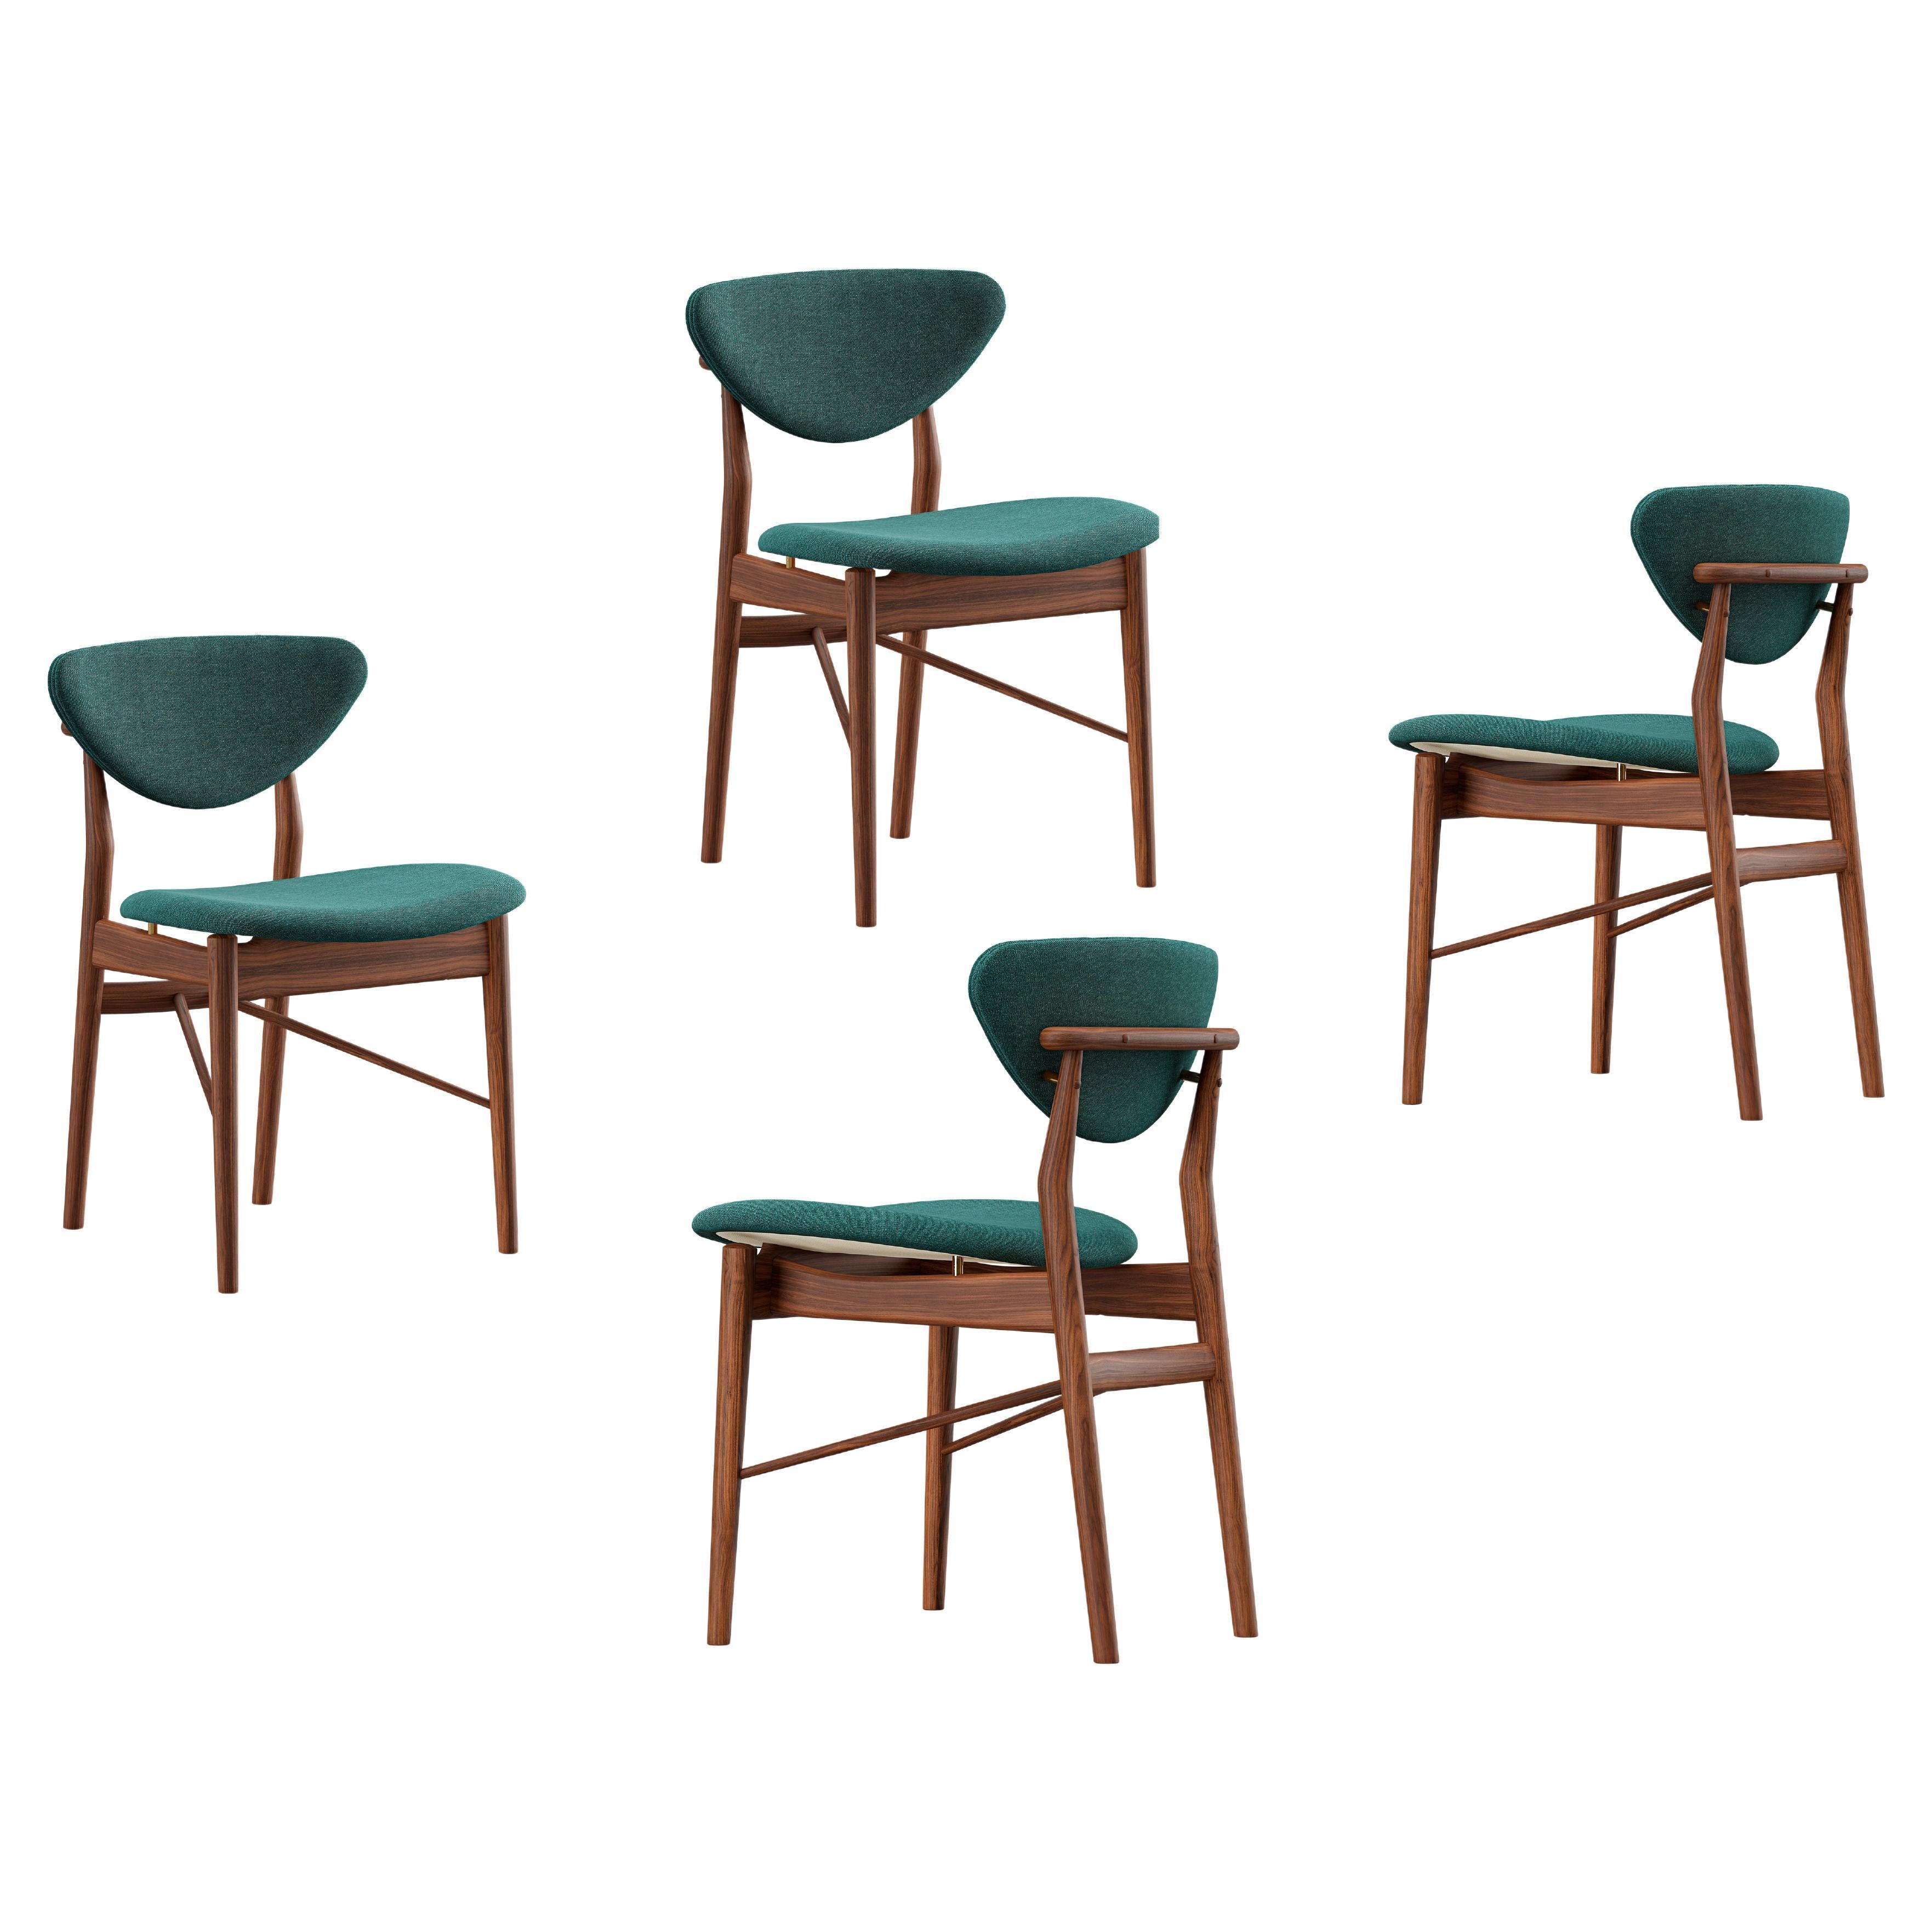 Set of Finn Juhl 108 Chairs by House of Finn Juhl